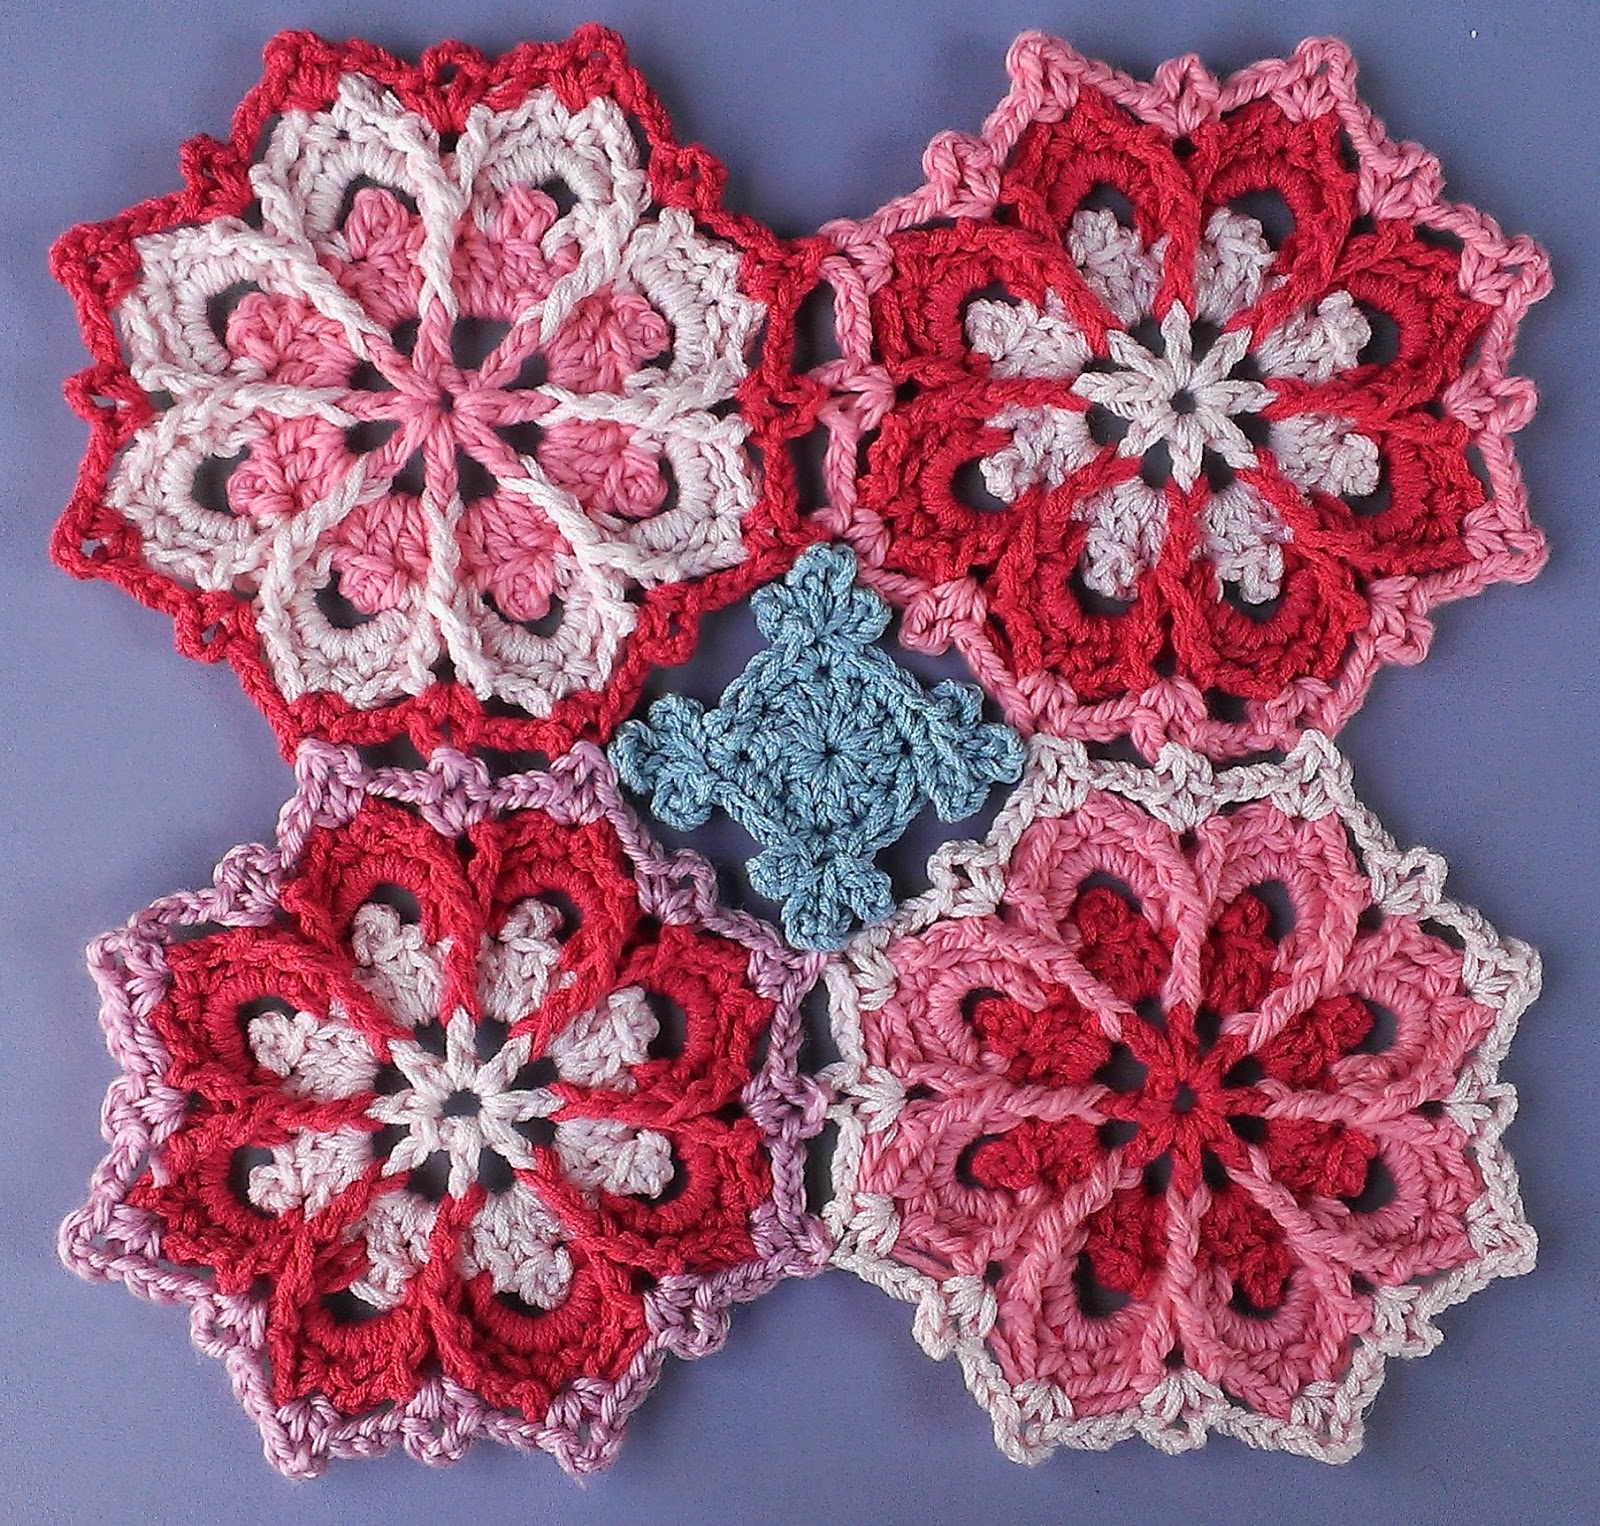  crochet  by faye Crochet  Motif Construction Webinar